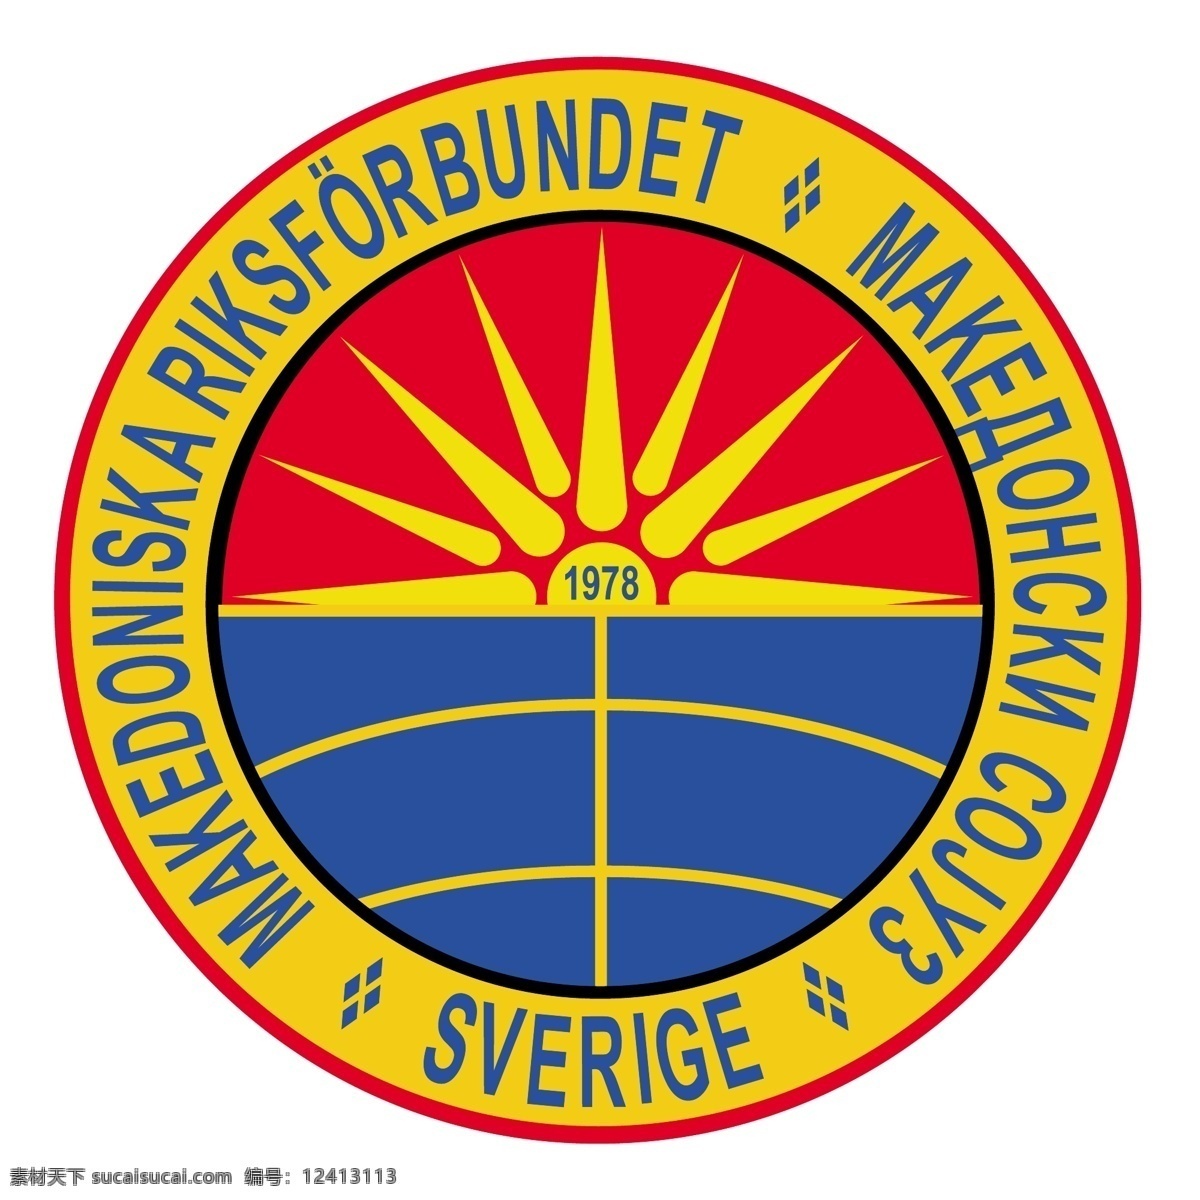 马其顿 联盟 瑞典 标志 工会 矢量图下载 马其顿的联盟 联盟的瑞典 联合 矢量 联盟的载体 结合矢量图像 结合向量 结合 矢量图 向量 建筑家居